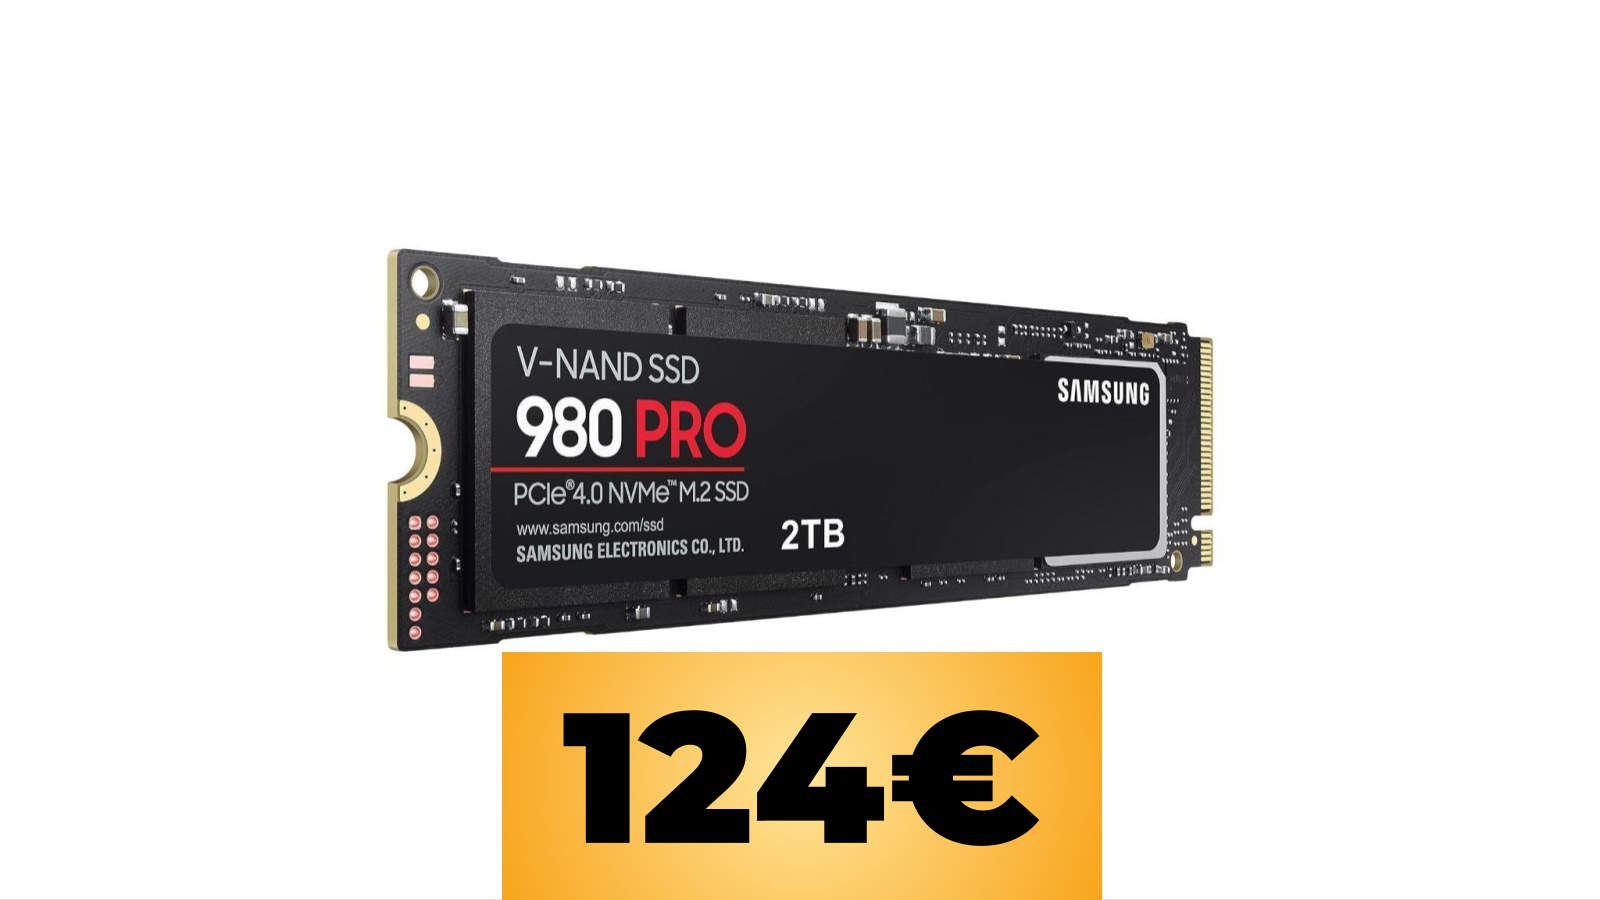 SSD Samsung 980 PRO da 2 TB per PS5 e PC al prezzo minimo storico su Amazon per le offerte Prime